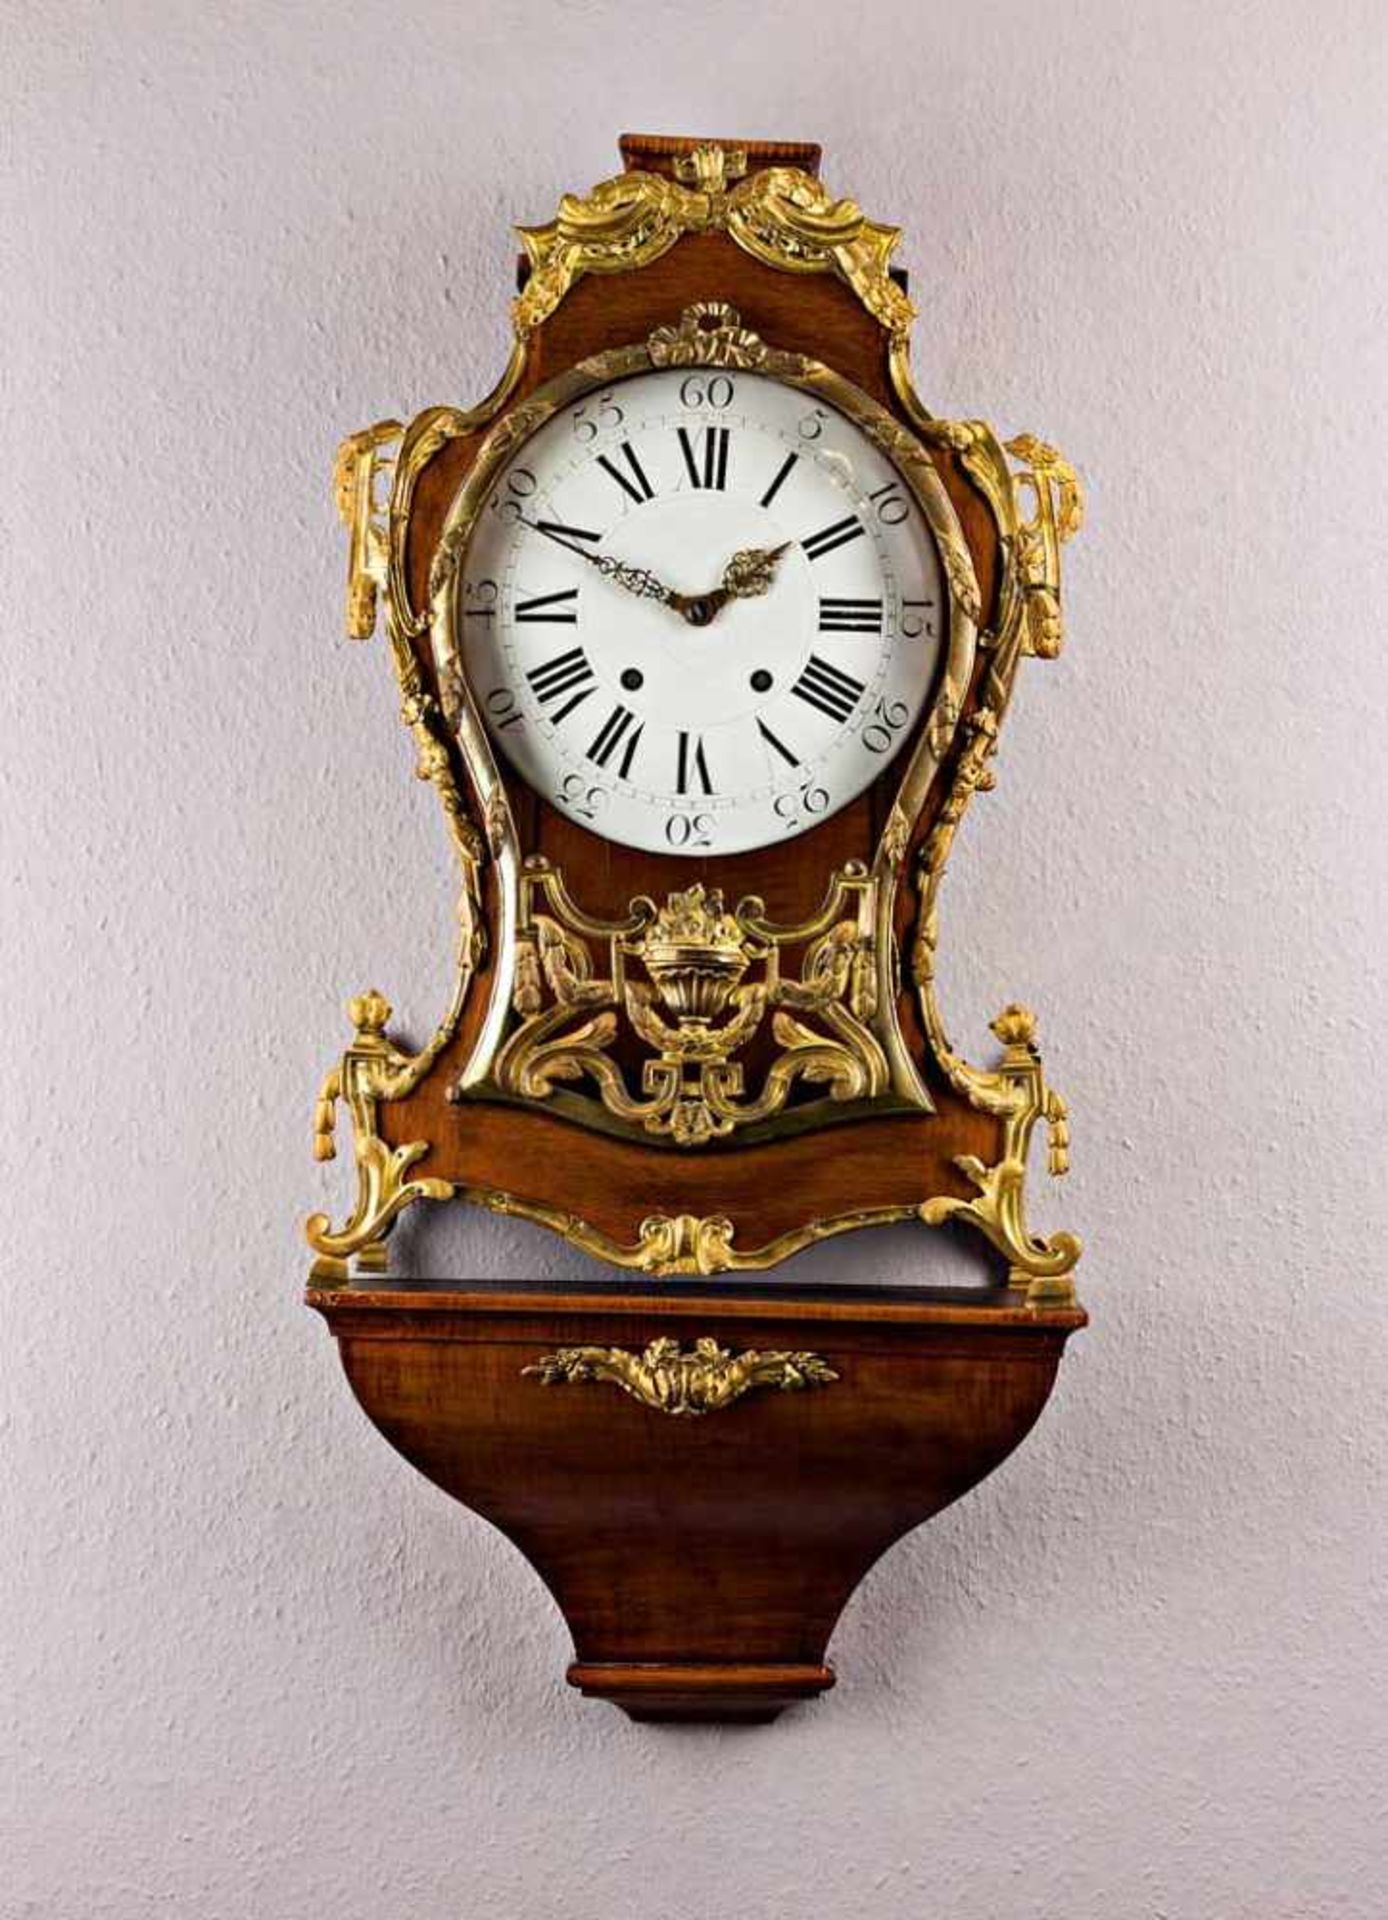 Prachtvolle barocke Pendule in Form einer Boulle-Uhr. Geschweiftes Nussbaumgehäuse mit teils